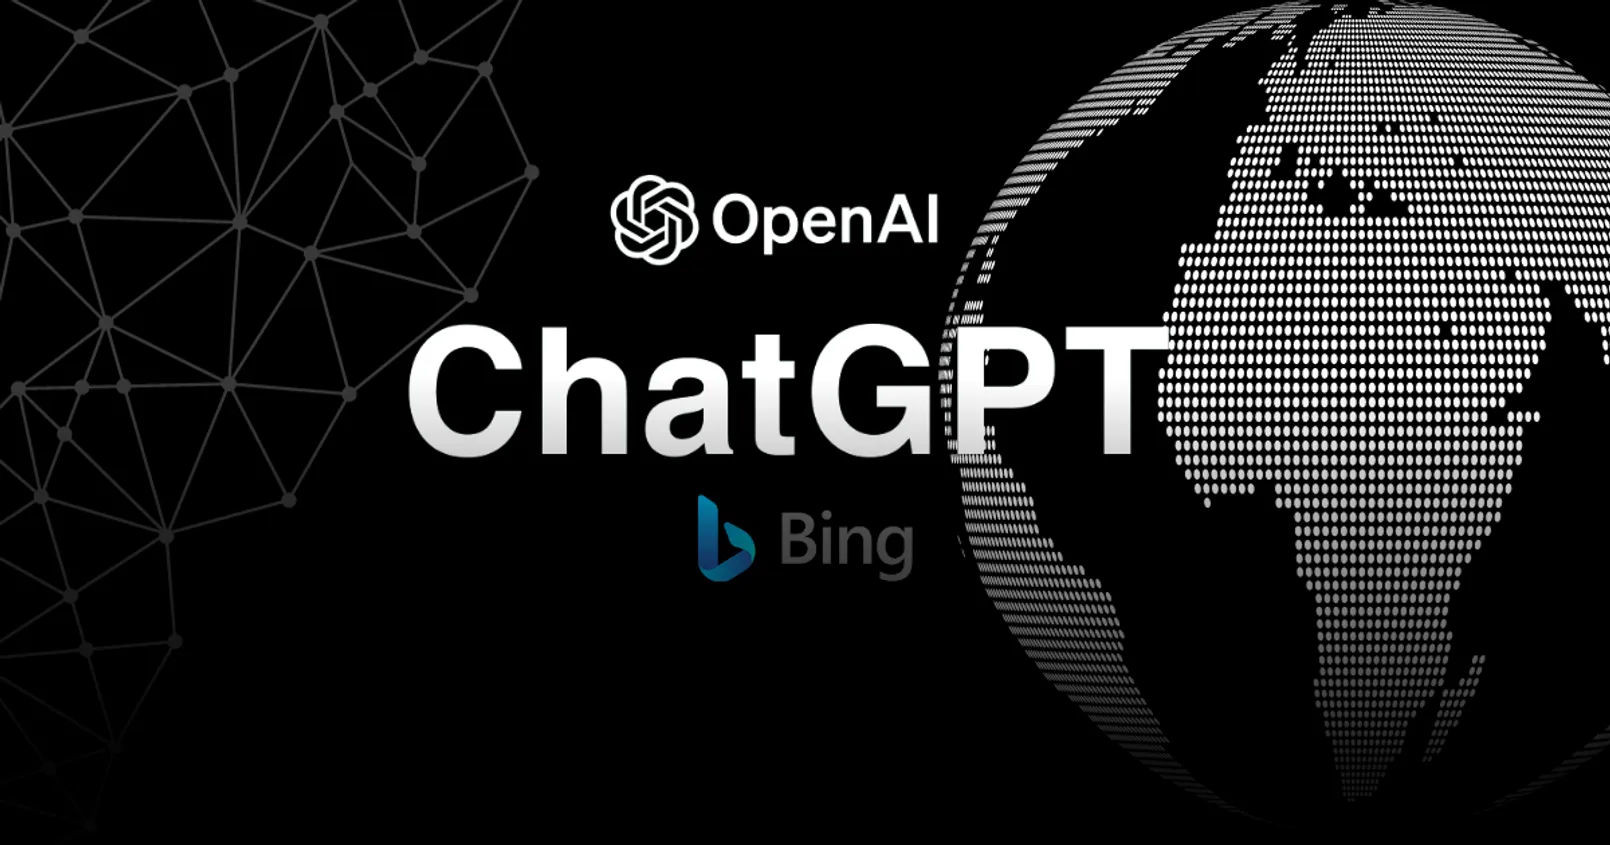 สะเทือนวงการ! ล่าสุด OpenAI ประกาศปลดล็อก ChatGPT ให้สามารถท่องโลกอินเทอร์เน็ตได้แล้ว